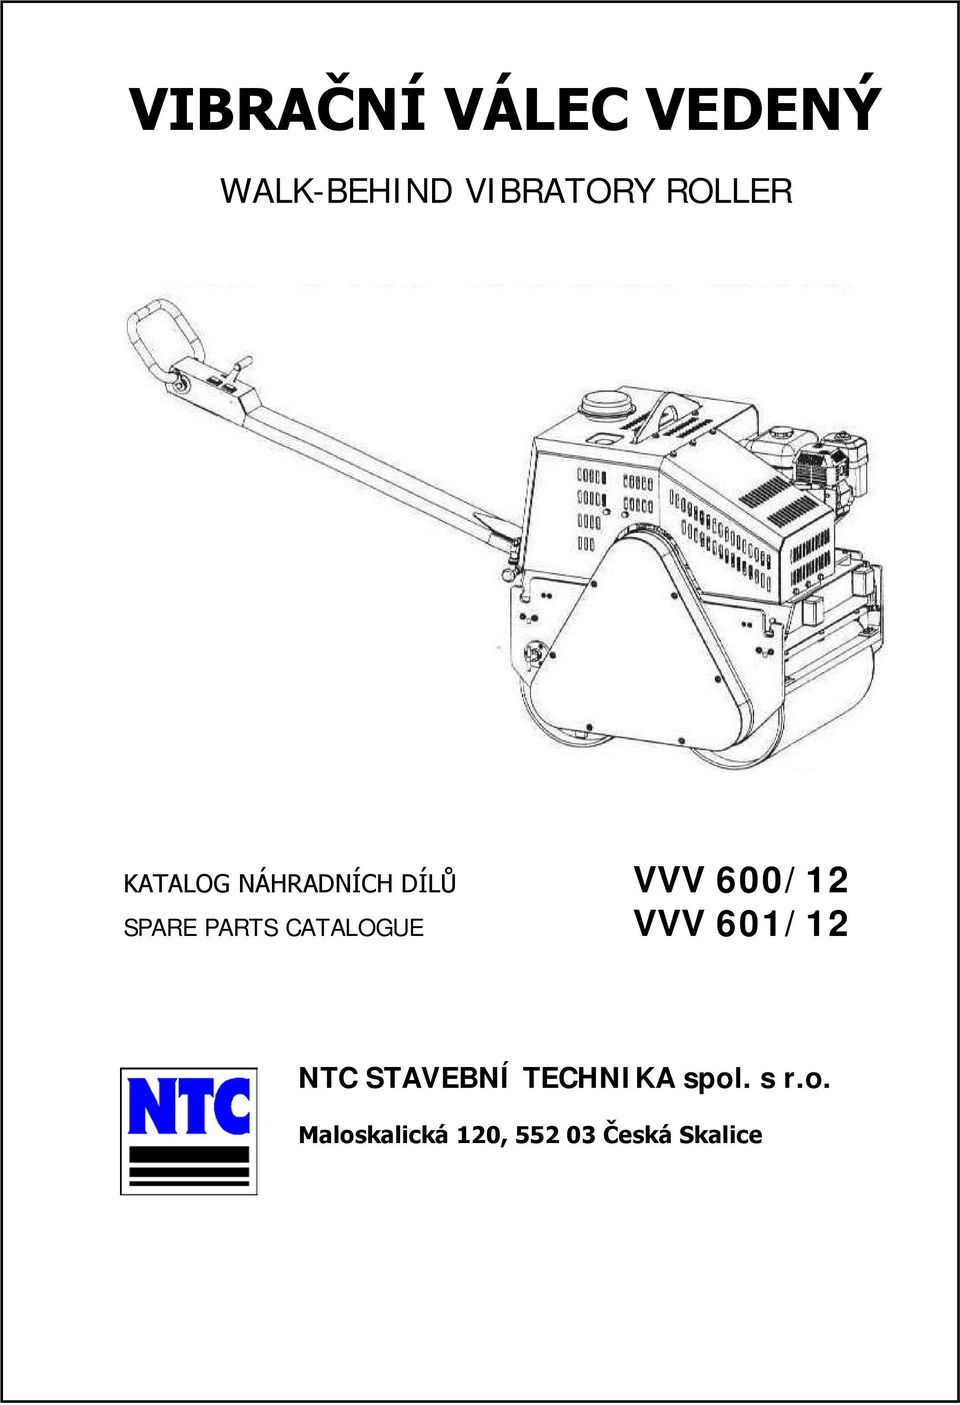 PARTS CATALOGUE VVV 601/12 NTC STAVEBNÍ